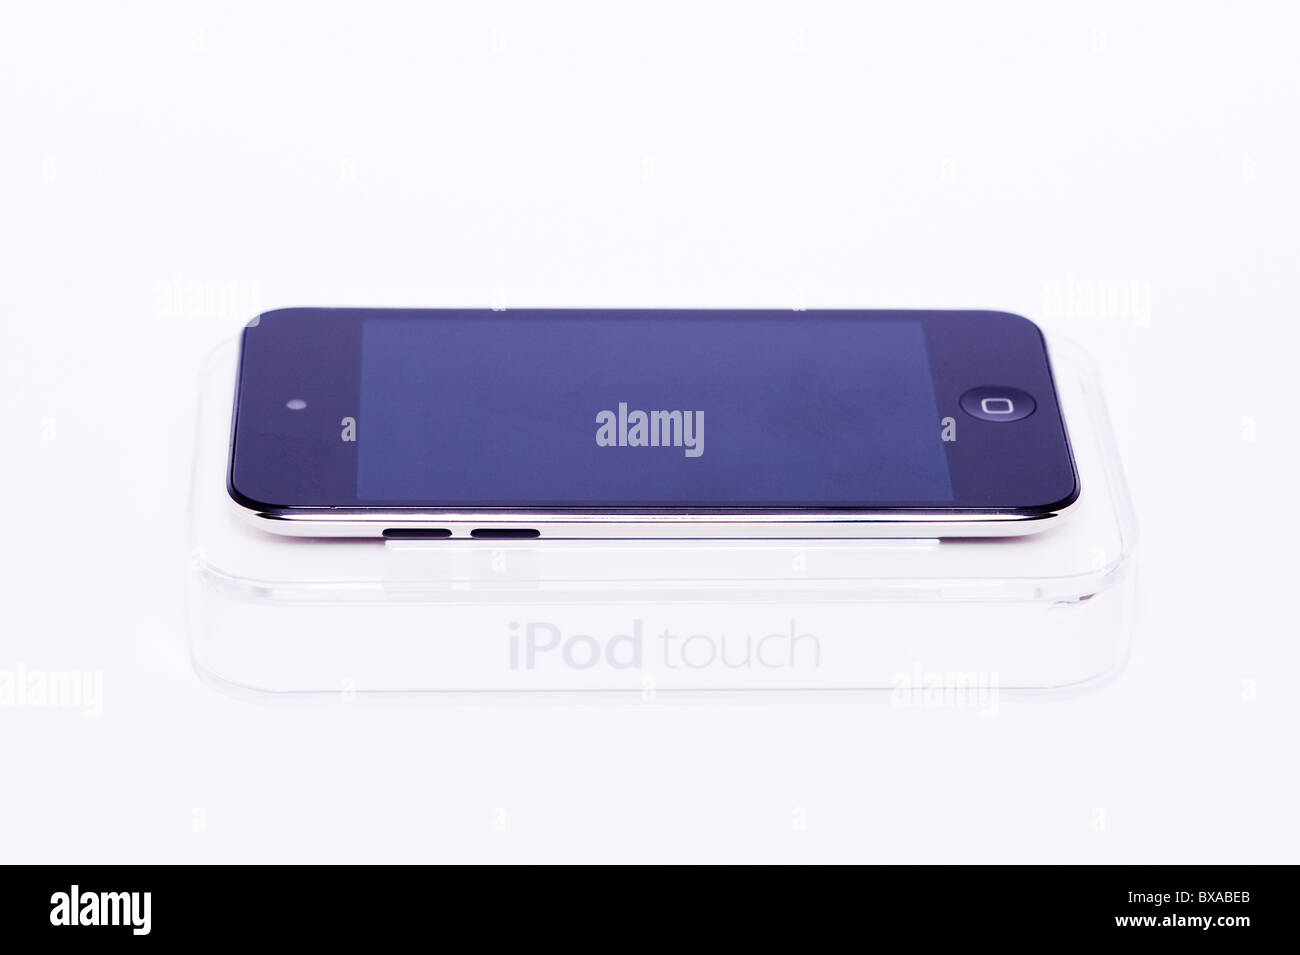 Der neue Apple Ipod touch 4. Generation 4G 32gb Mediaplayer auf einem weißen Hintergrund Stockfoto